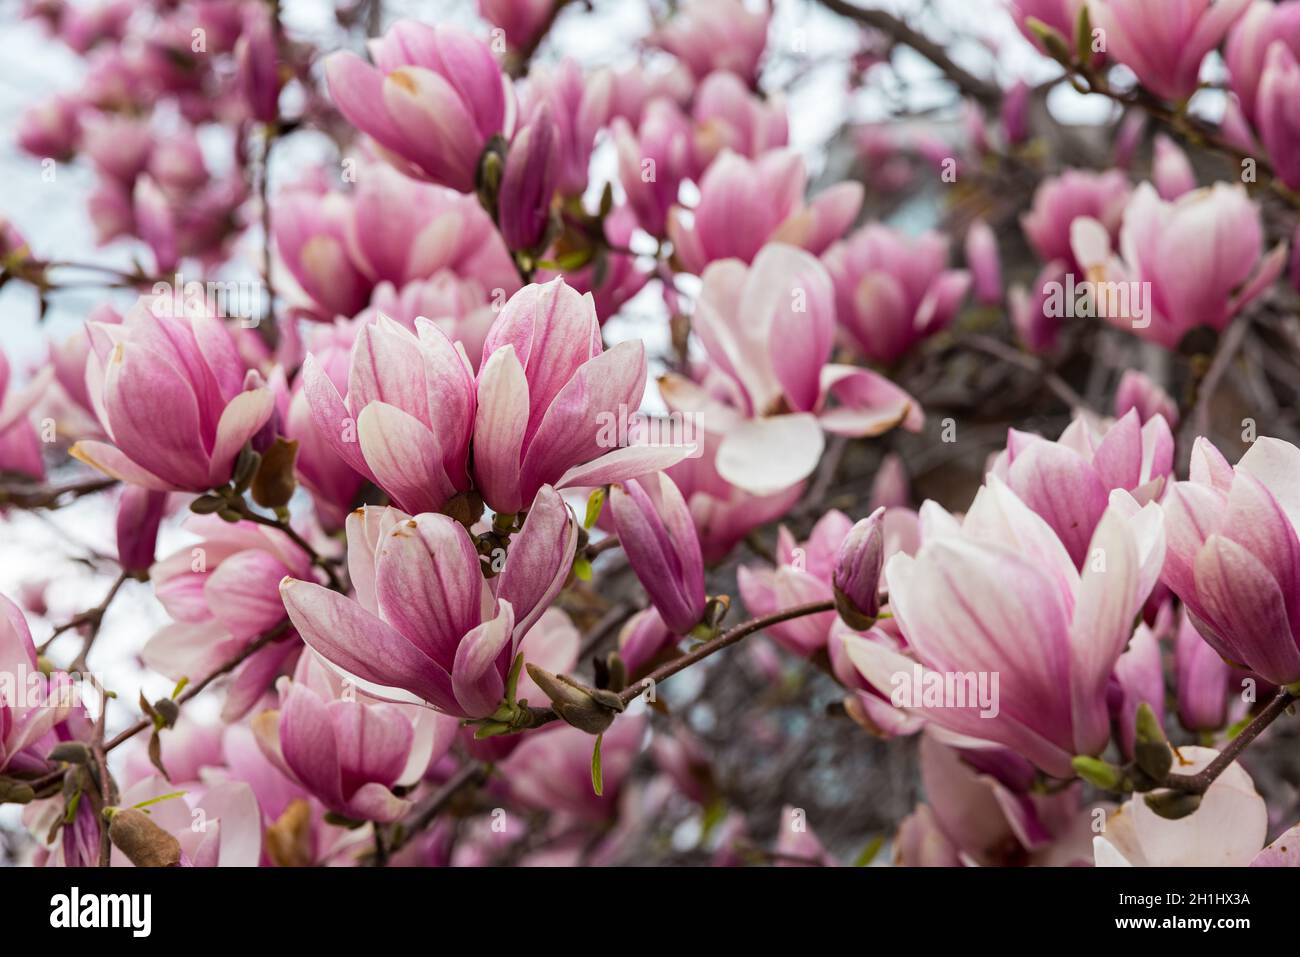 Magnolia Tree in Full Spring Bloom Stock Photo